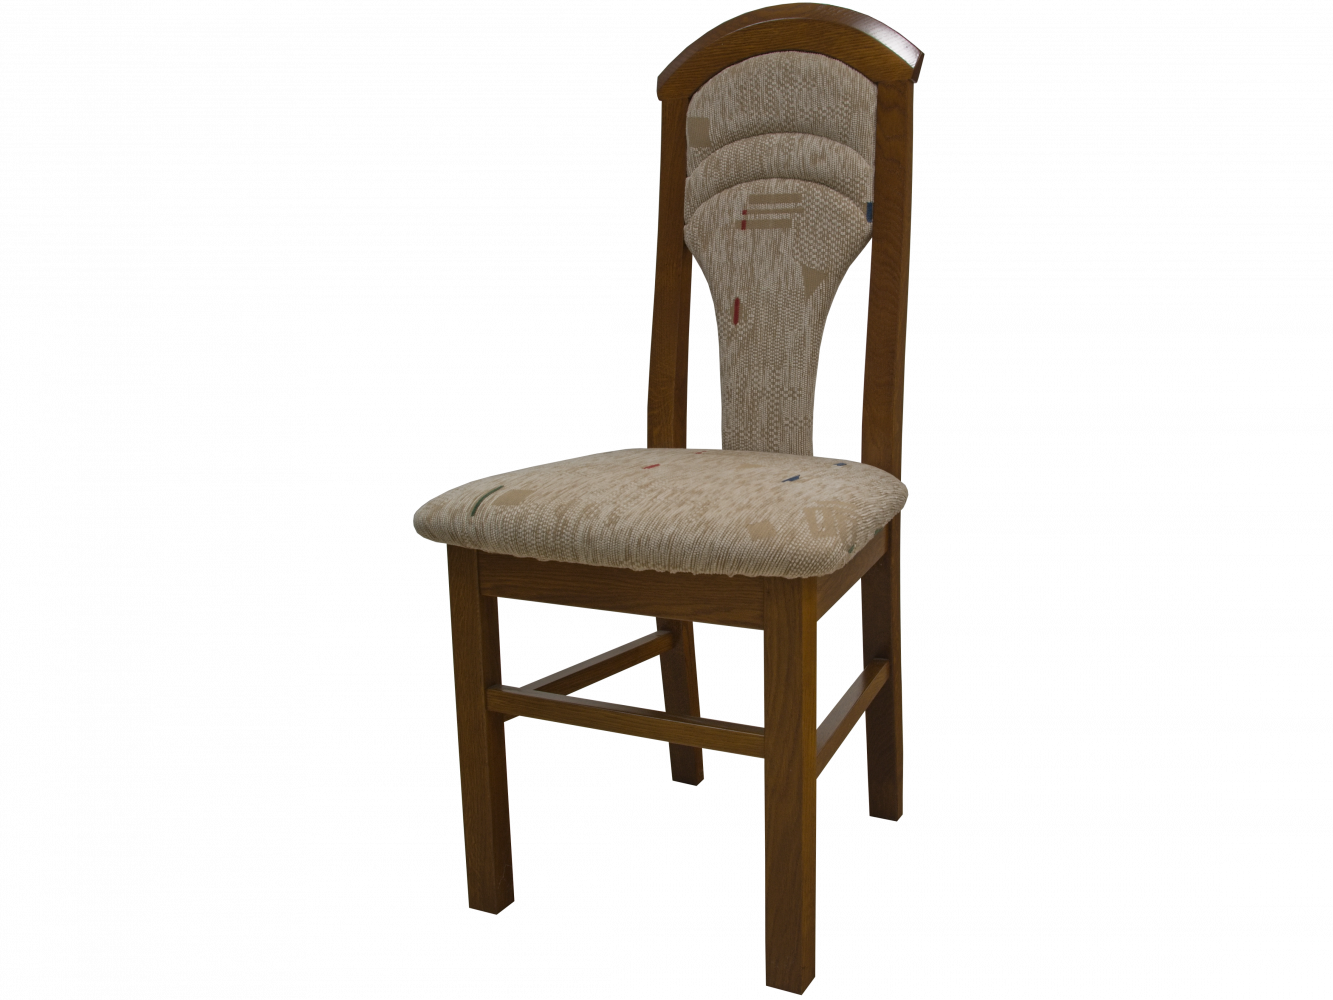 Dubová čalouněná židle